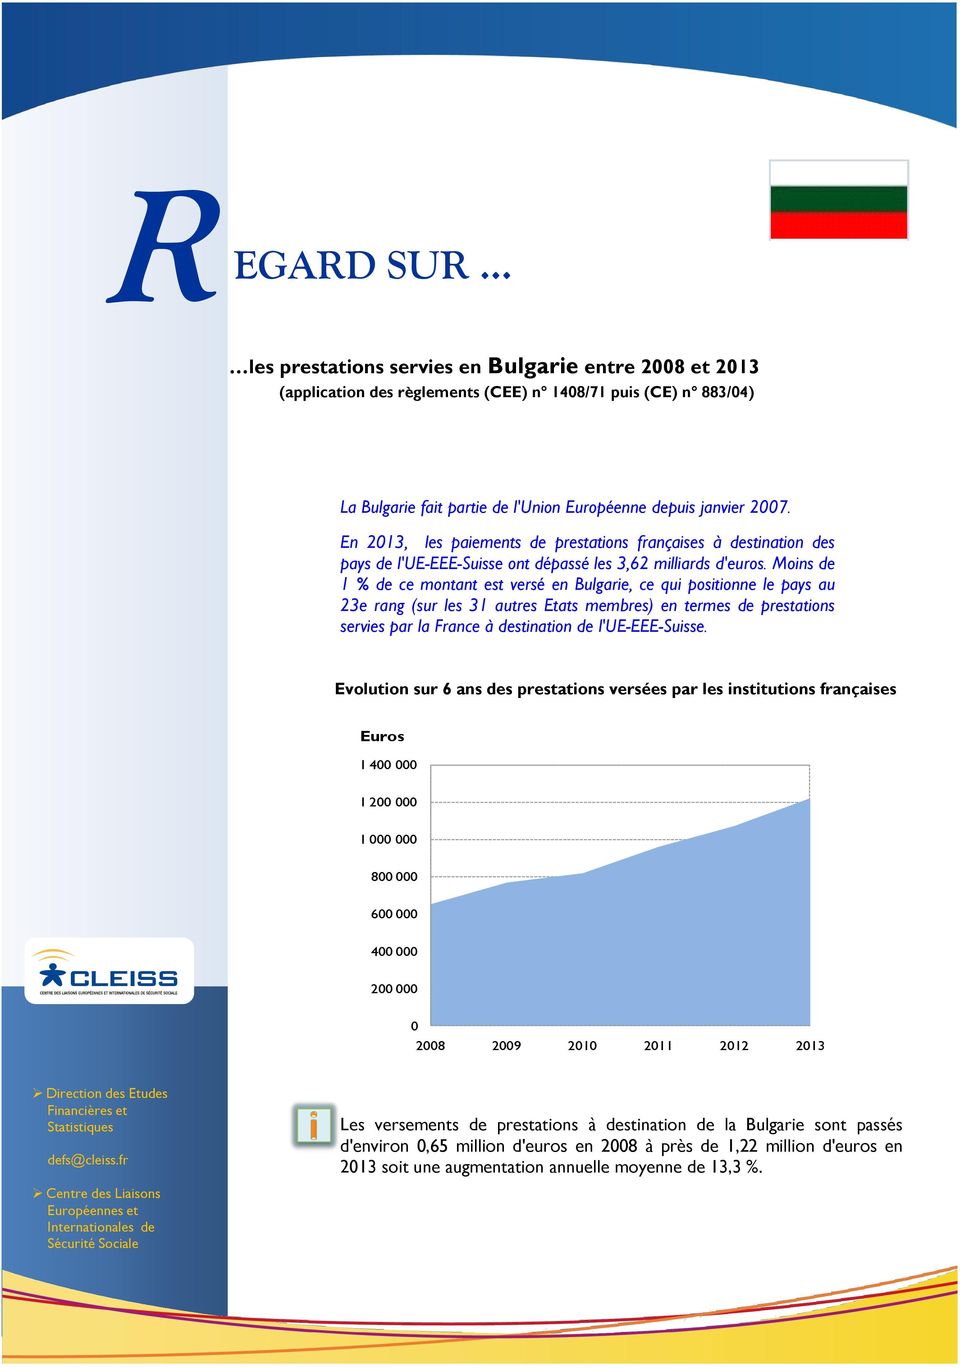 En 213, les paiements de prestations françaises à destination des pays de l'ue-eee-suisse En 213, ont dépassé les 3,62 milliards d'euros.